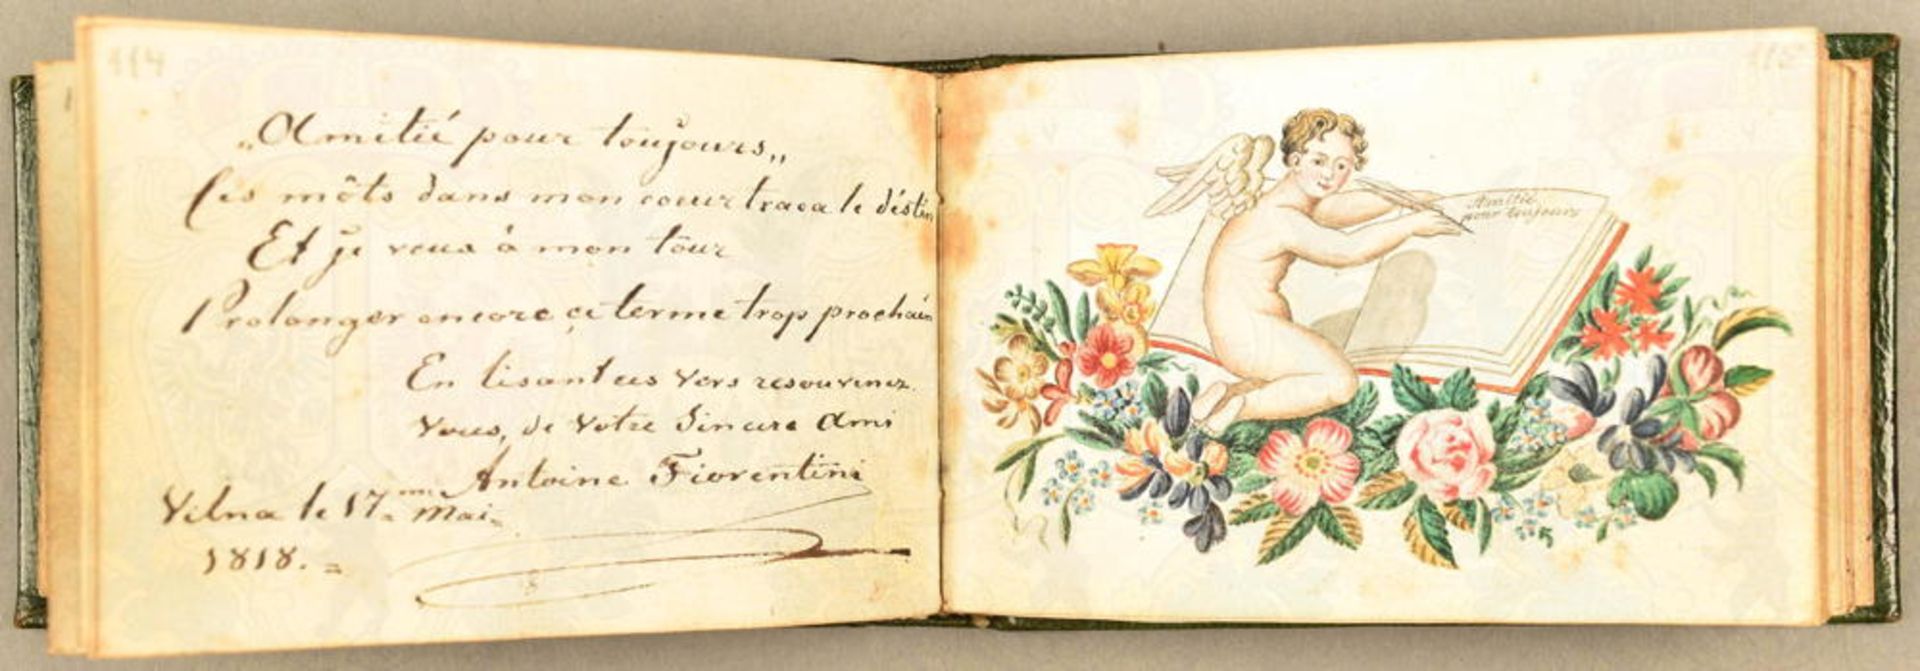 Poesie-Album einer Dame 1813-1844 - Bild 2 aus 4